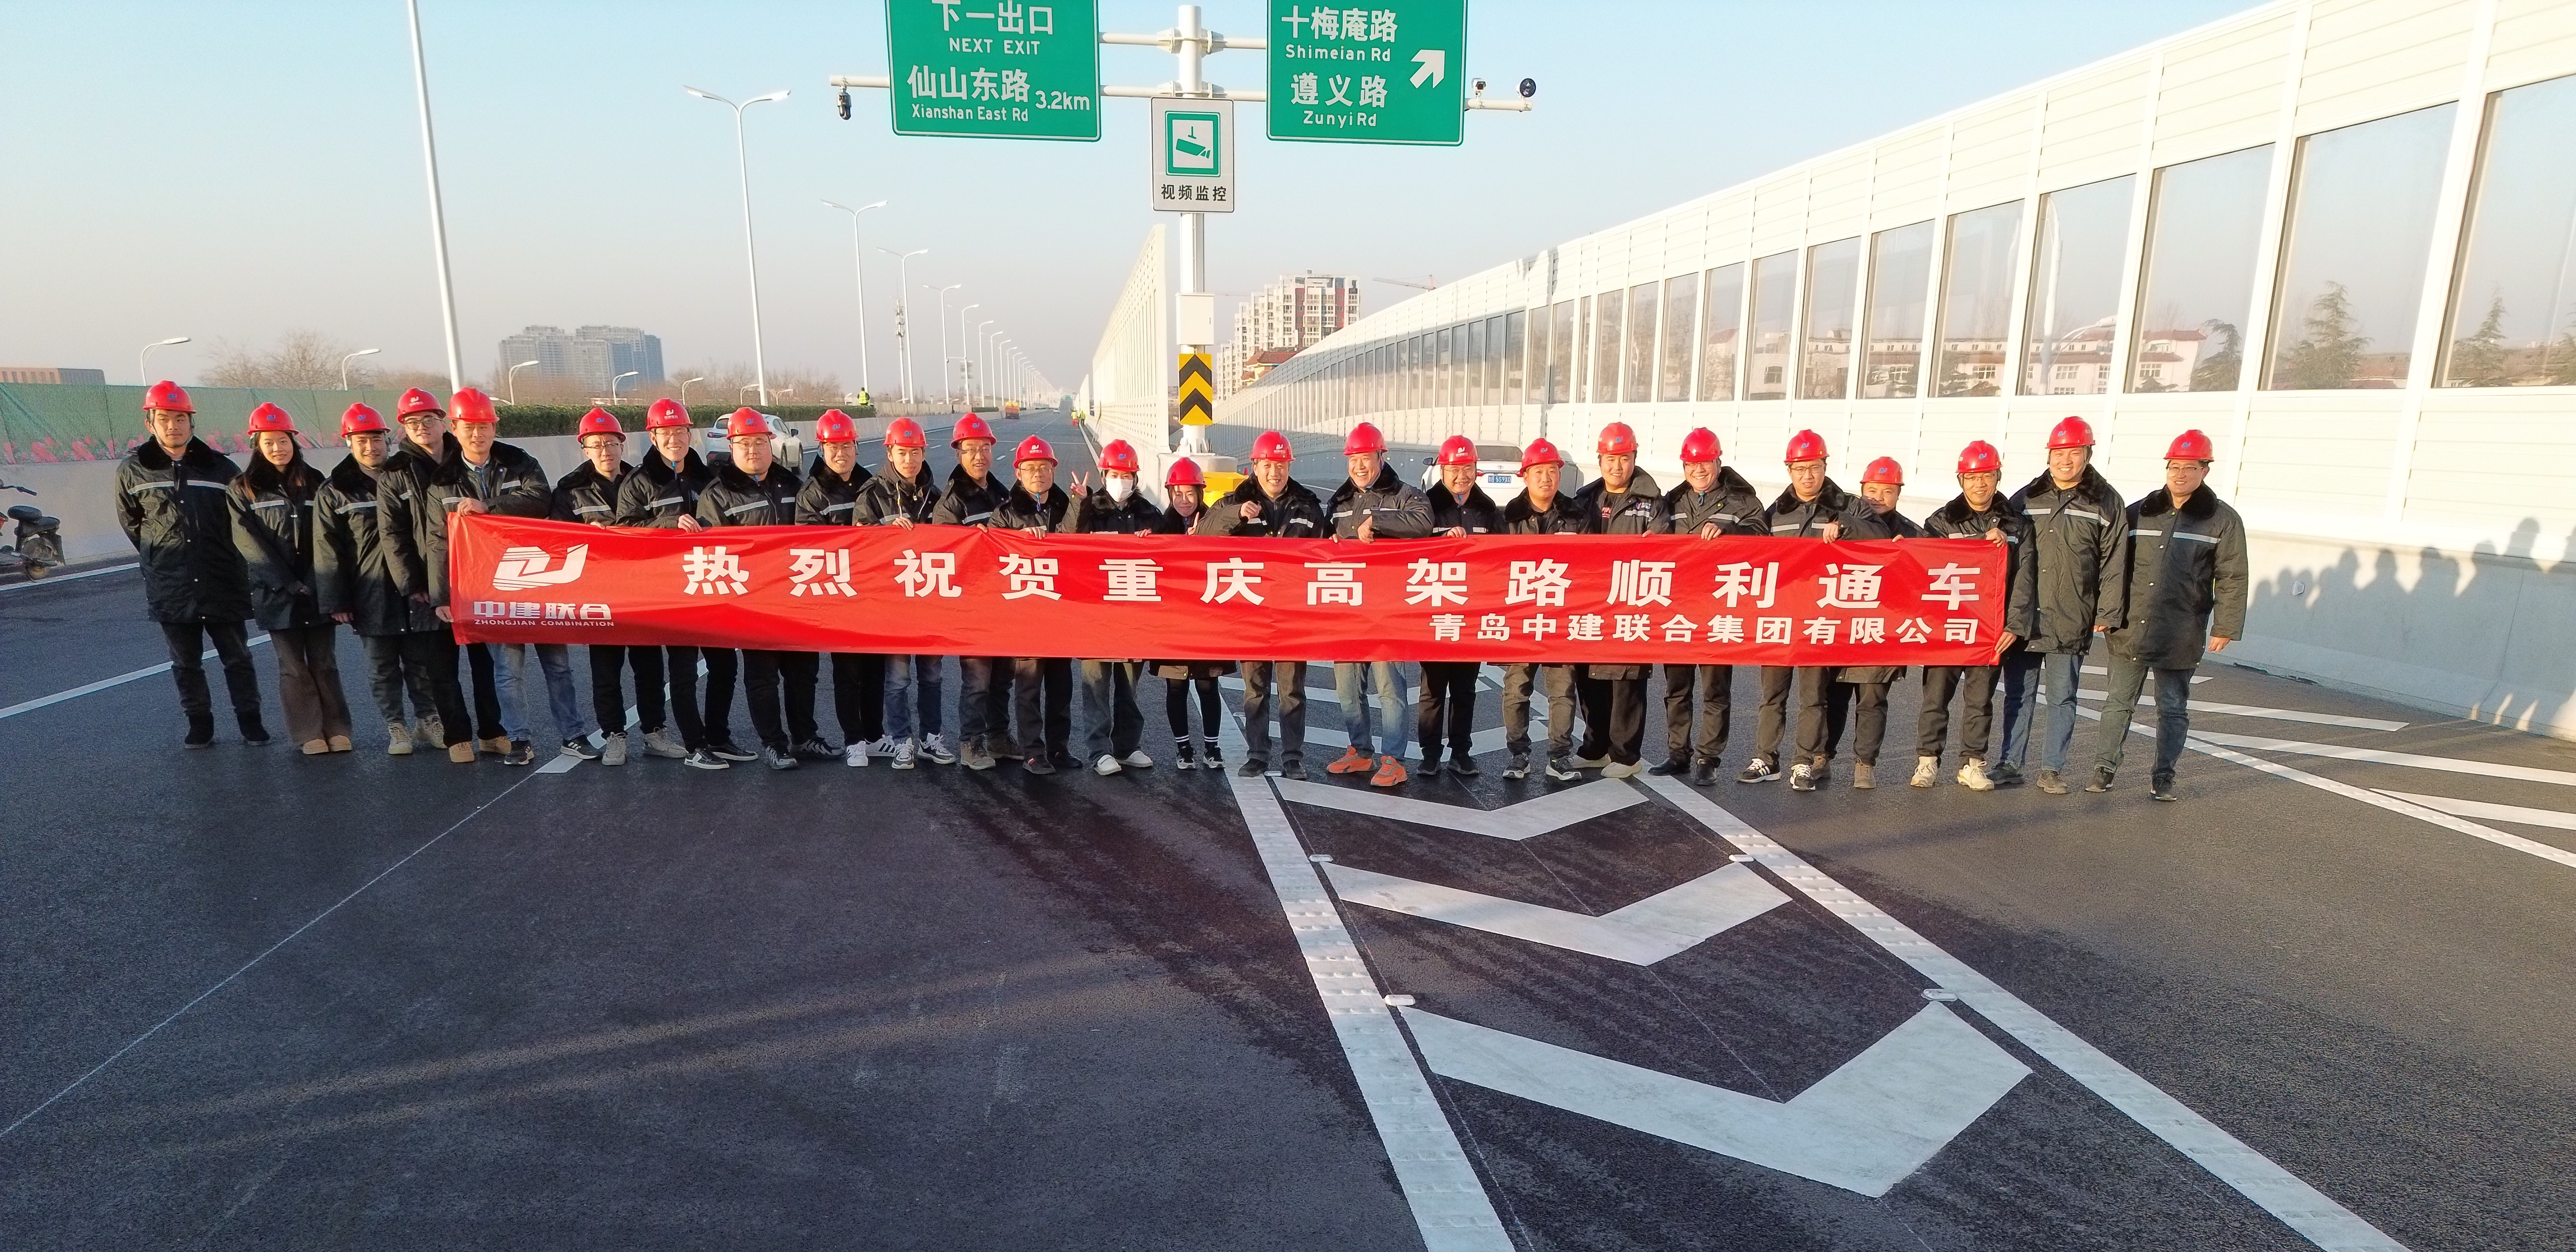 Zhongjian combination high standard construction was praised by Chongqing Viaduct project site headq